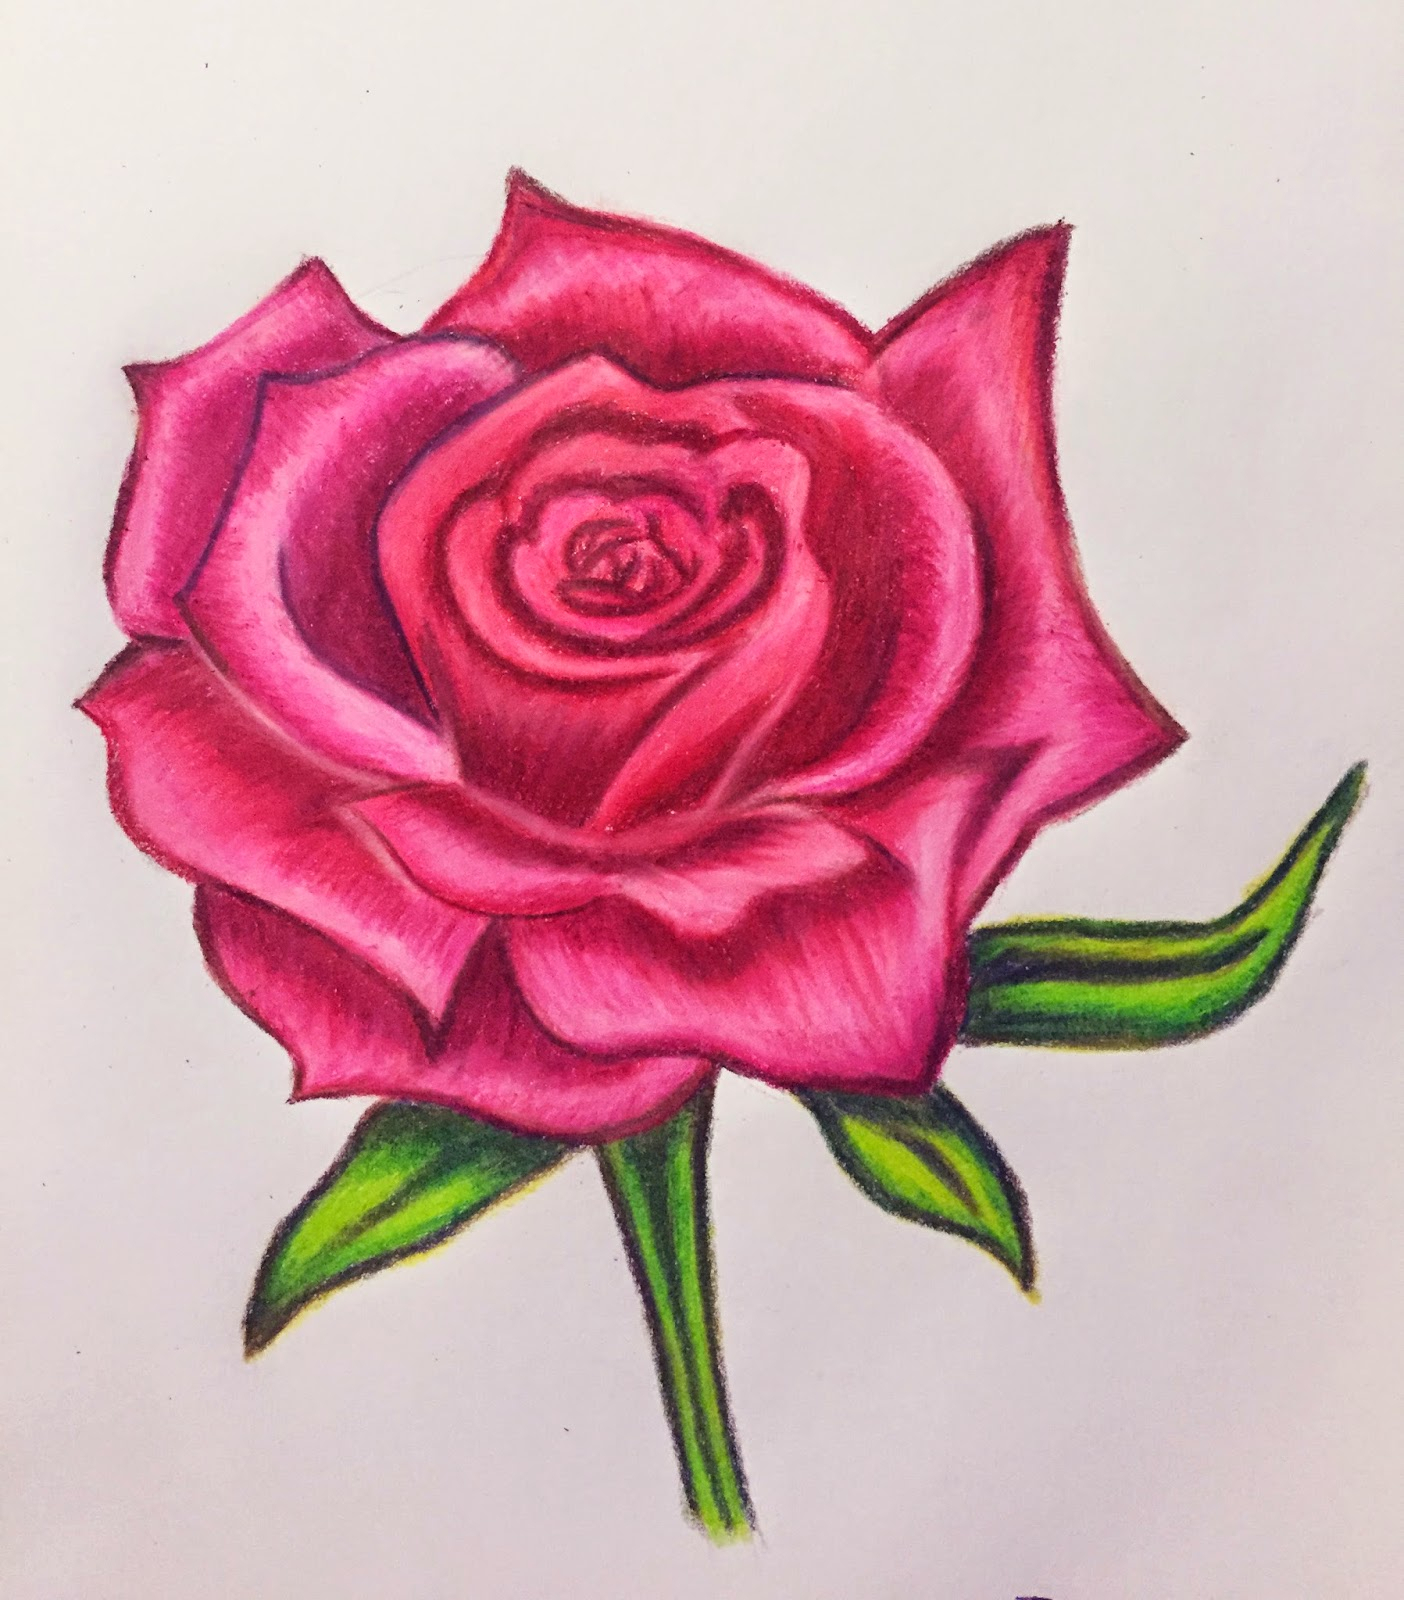 Hình ảnh hoa hồng vẽ bằng bút chì tuyệt đẹp